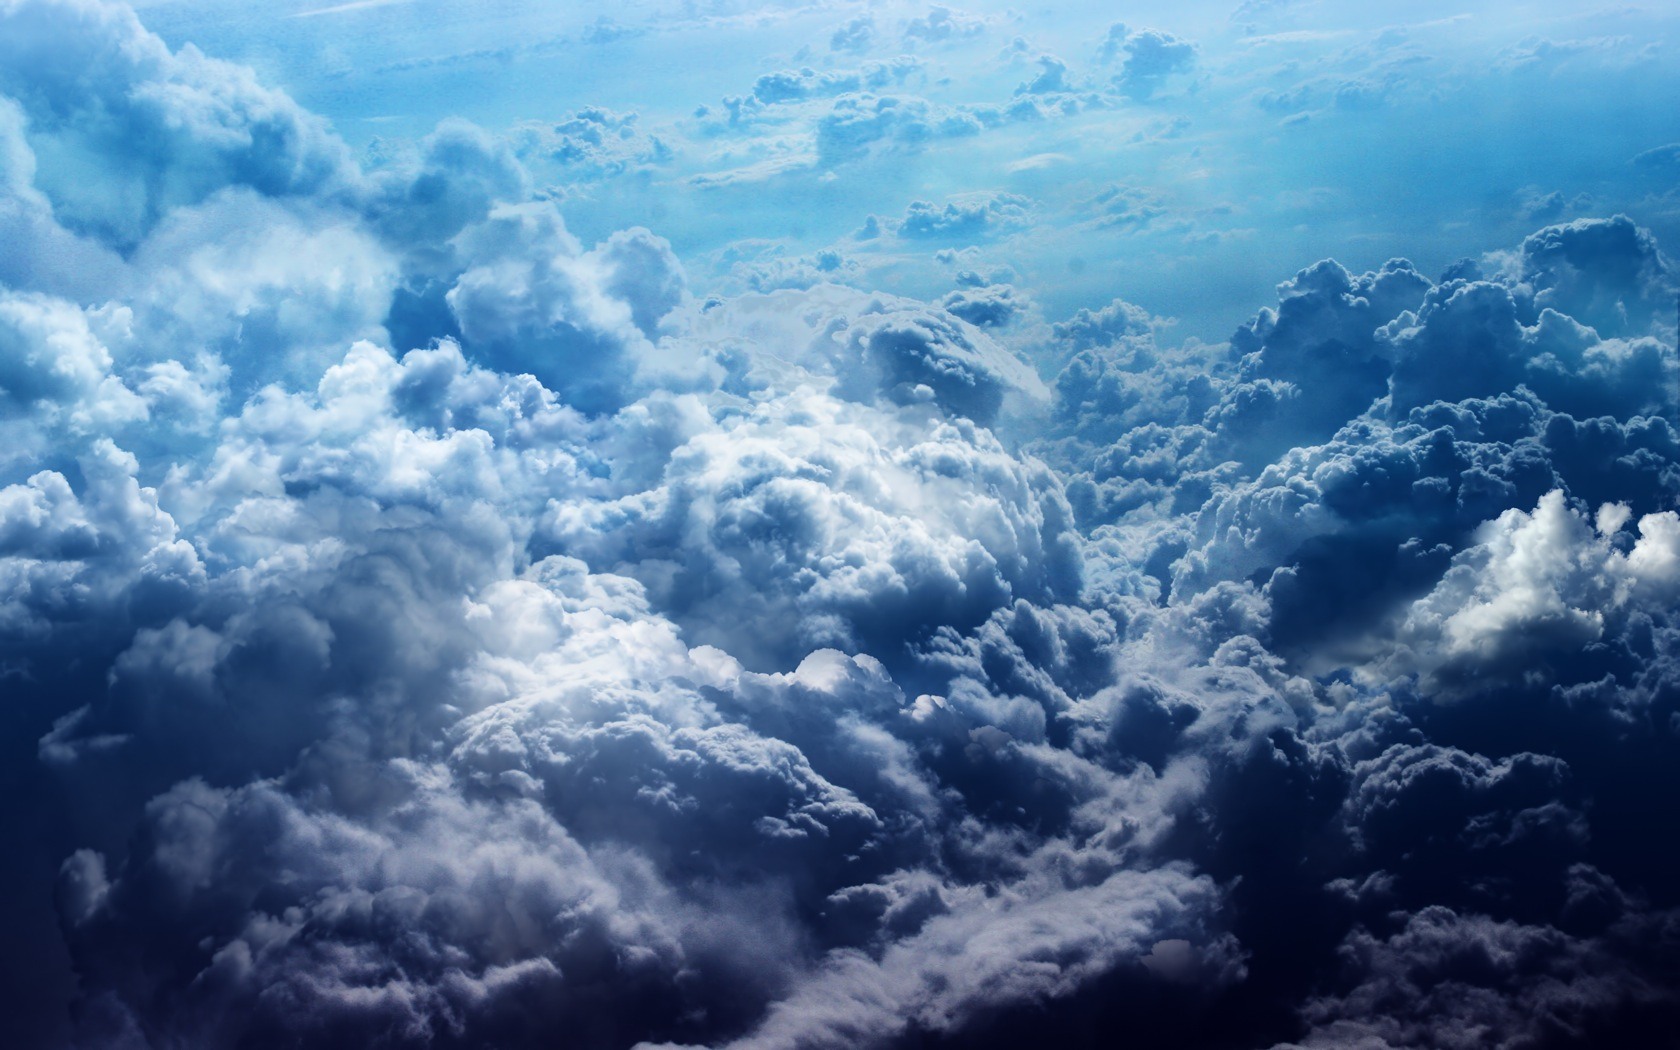 Clouds Wallpaper: Cool Blue Clouds Desktop Wallpaper 1680x1050px